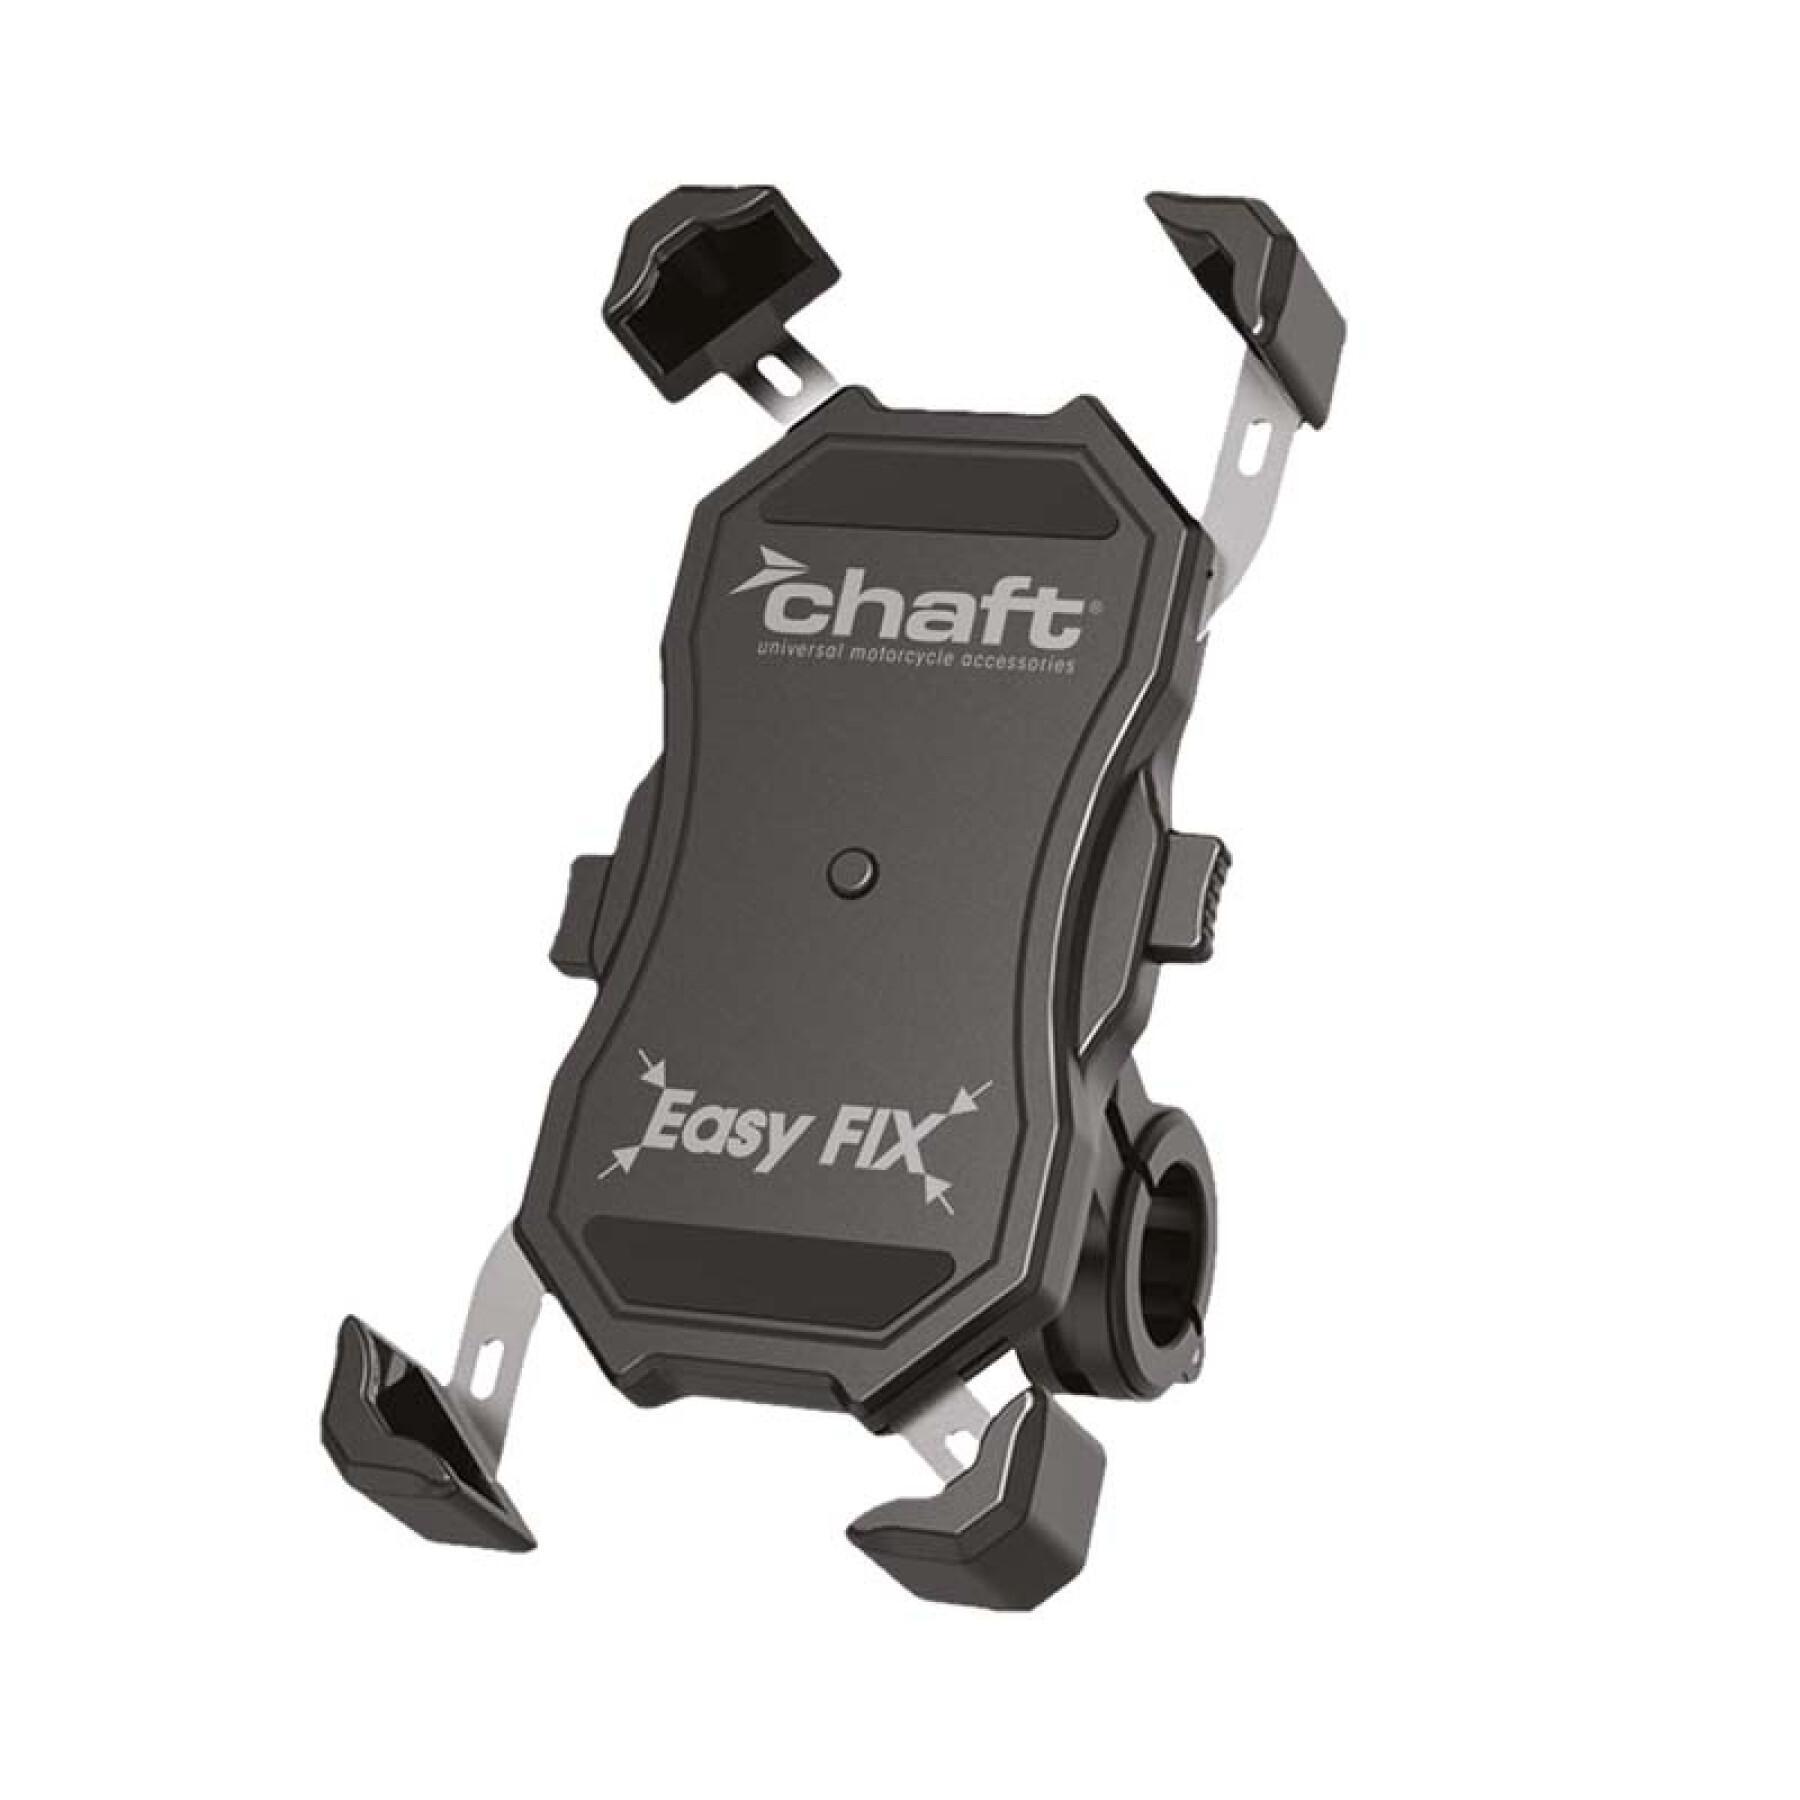 Soporte para smartphone de moto Chaft Easyfix